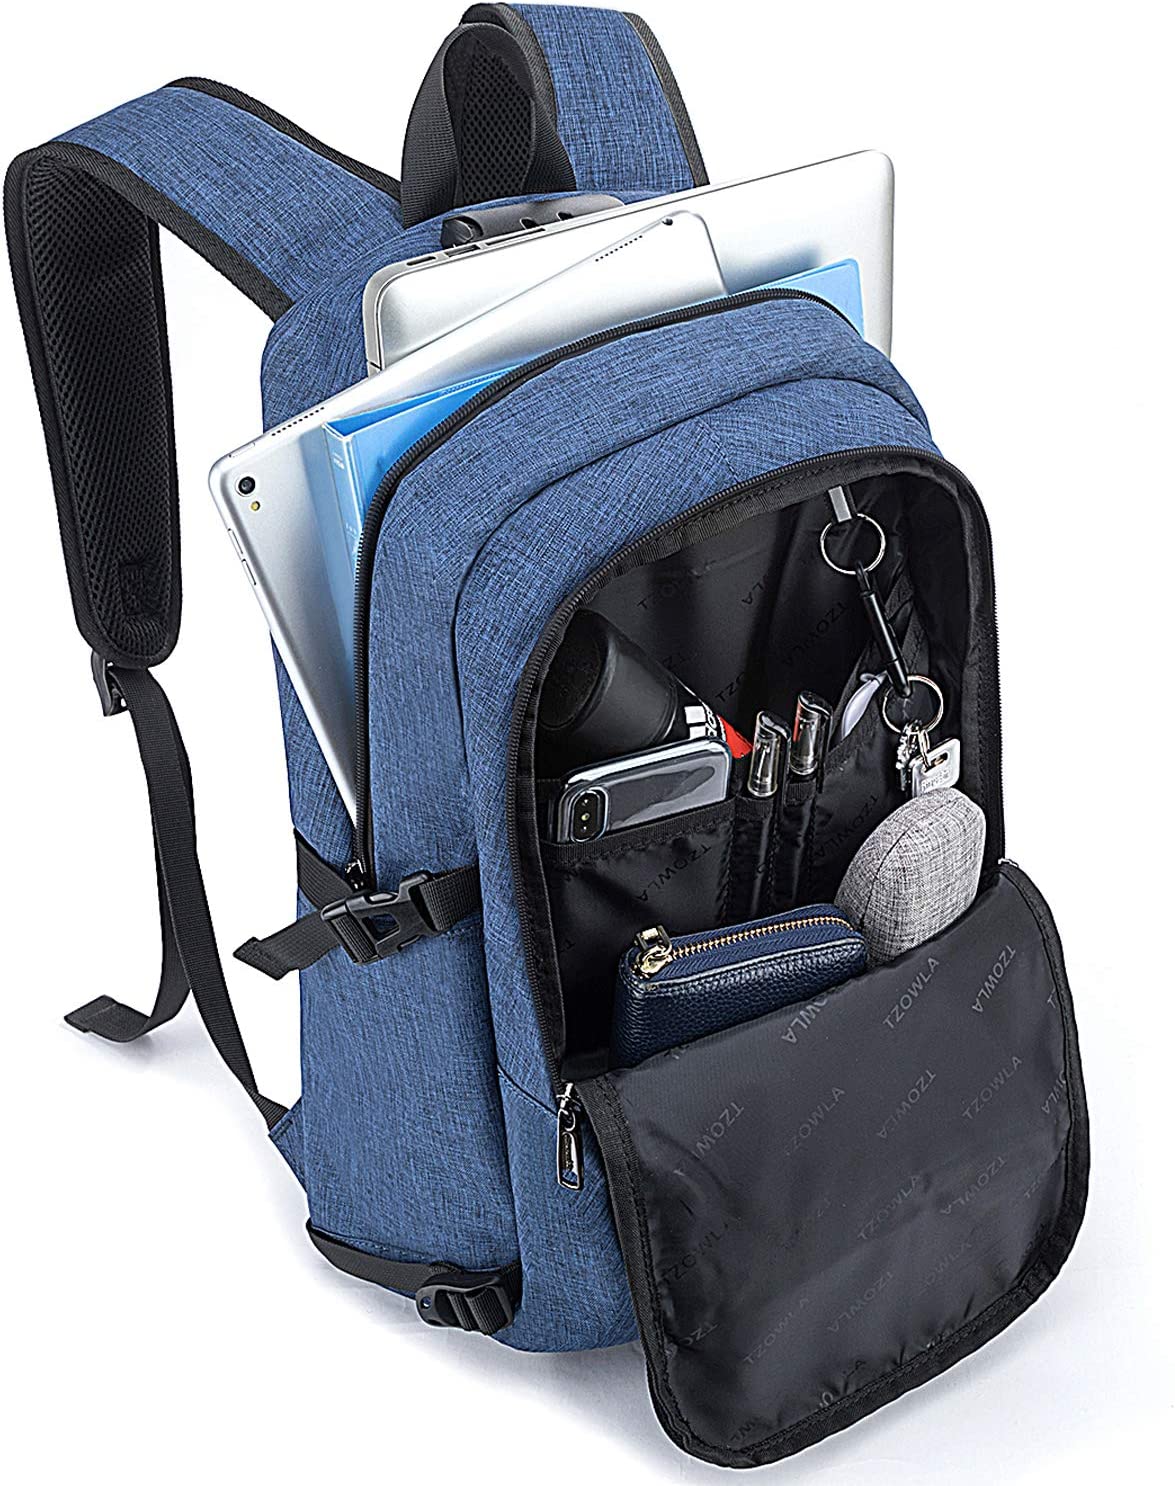 کوله پشتی با محفظه لپ تاپ Tzowla مدل laptop backpack- ارسال ۱۰ الی ۱۵ روز کاری